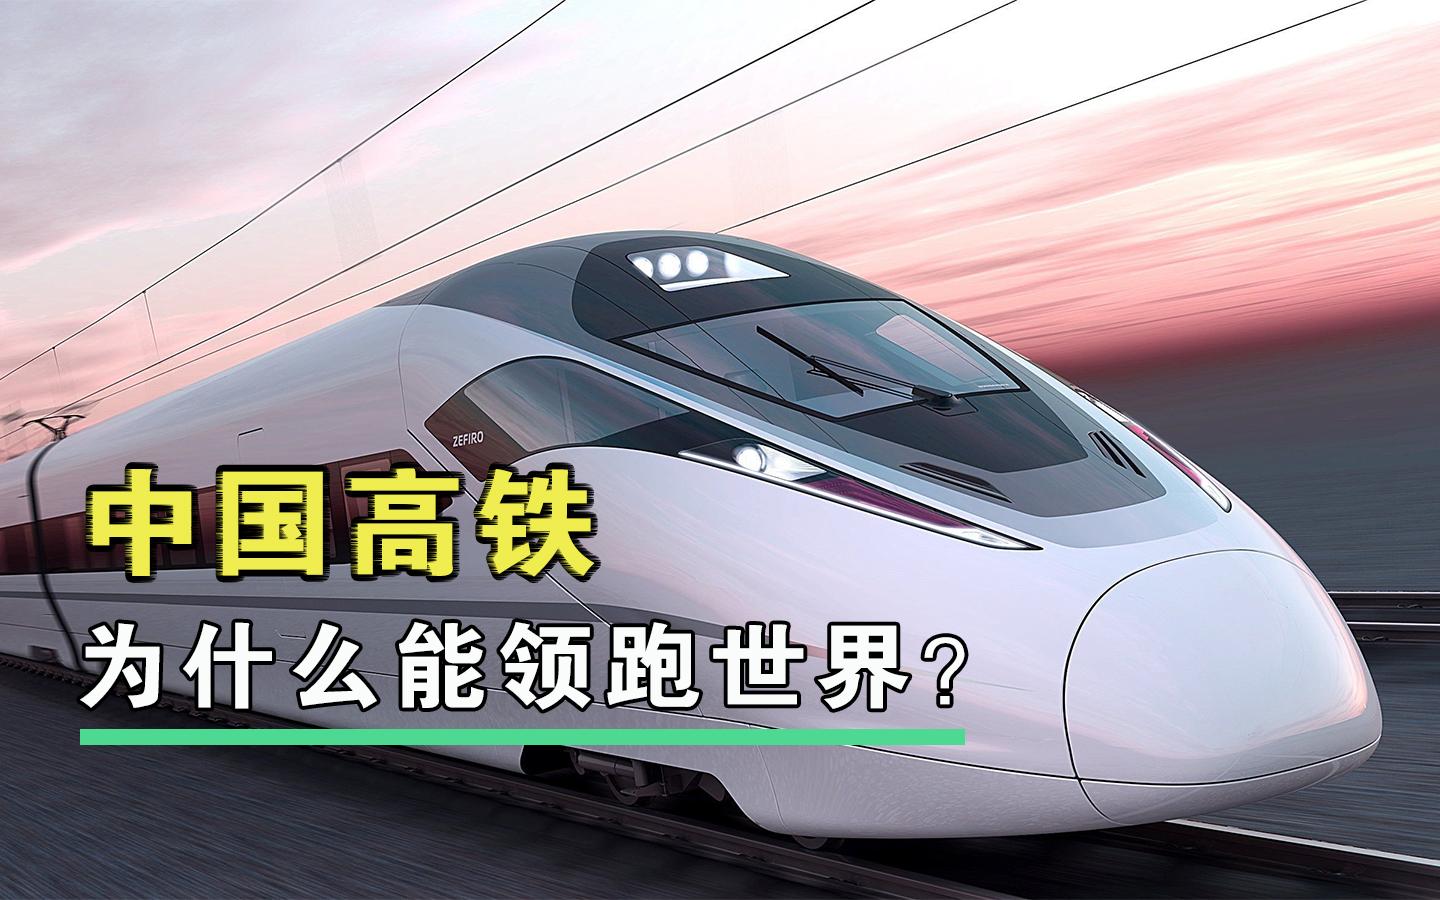 中国高铁为什么能领跑世界?详解高铁核心技术!